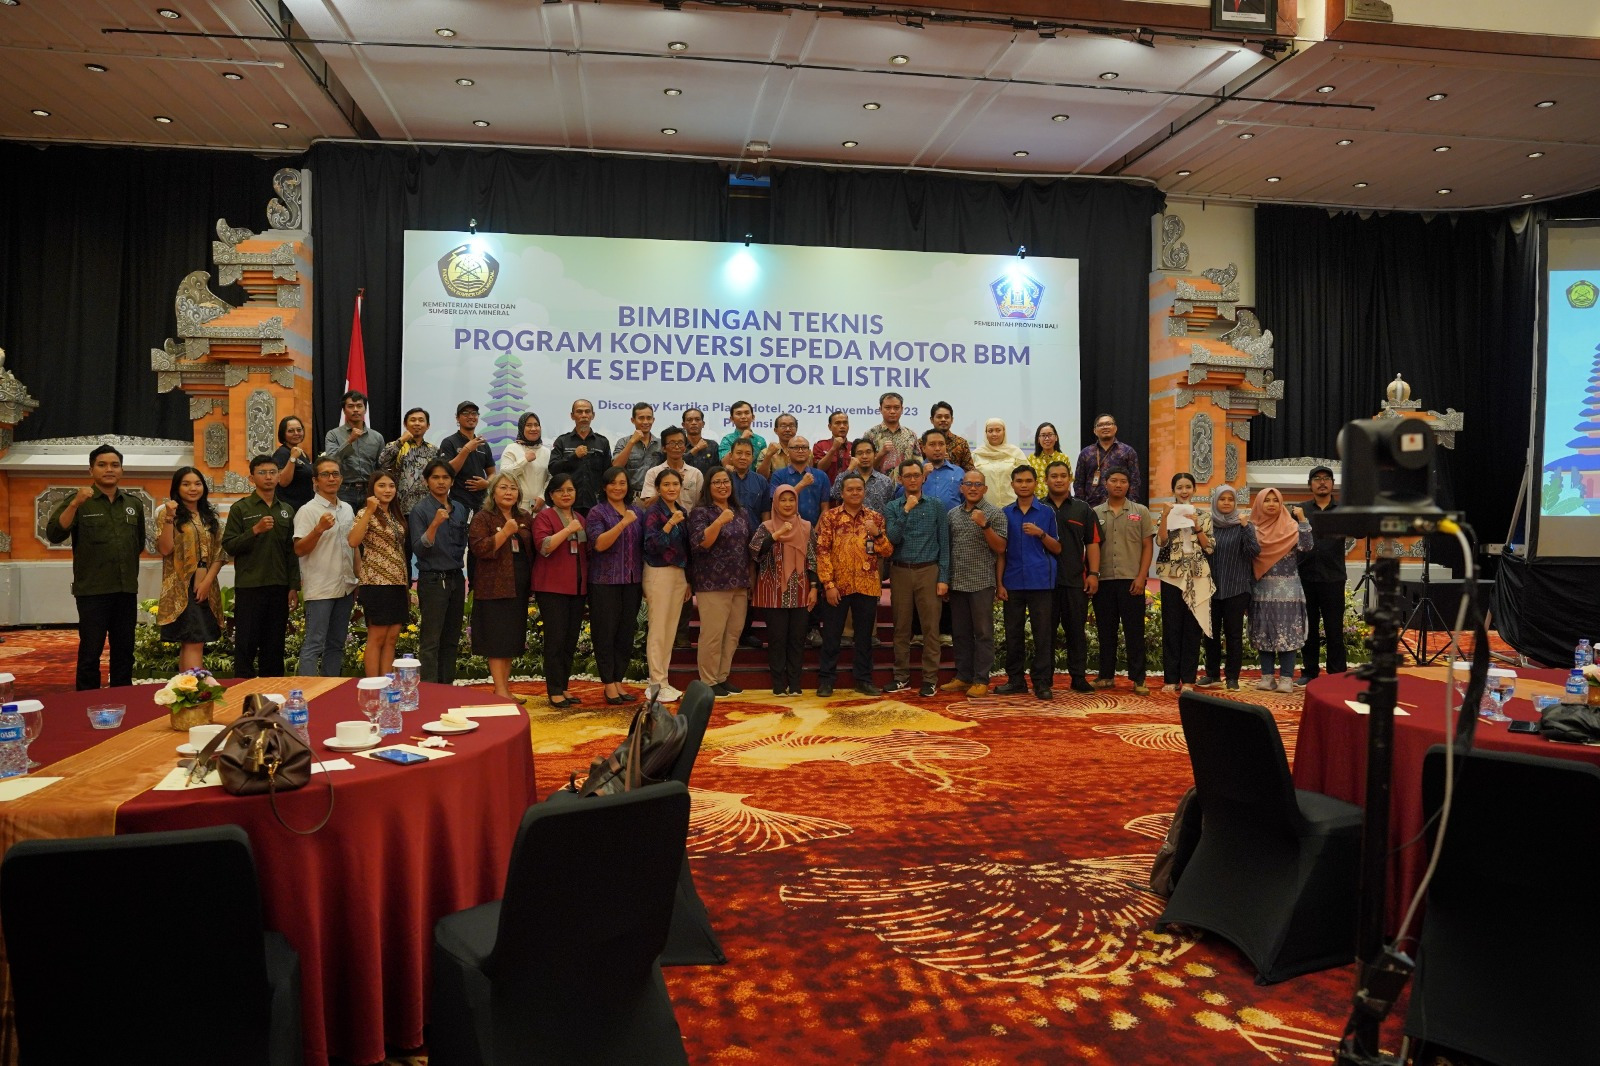 Kementerian ESDM Selenggarakan Bimtek Konversi Program Konversi Sepeda Motor BBM ke Sepeda Motor Listrik di Bali